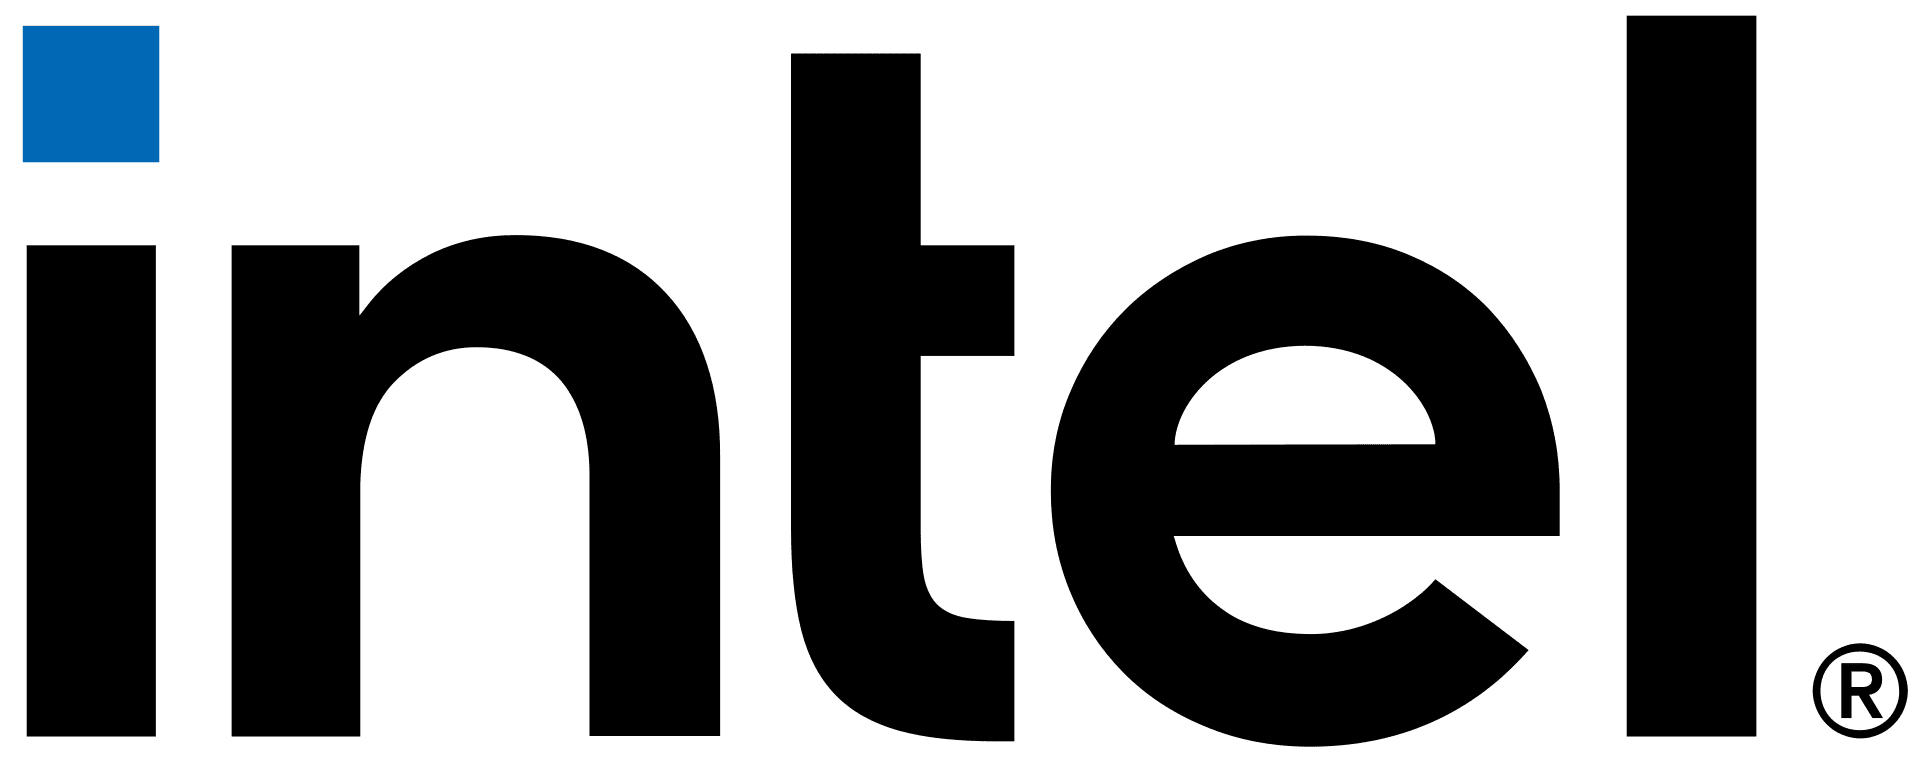 Intel cambia su logotipo después de casi 15 años | Teknófilo